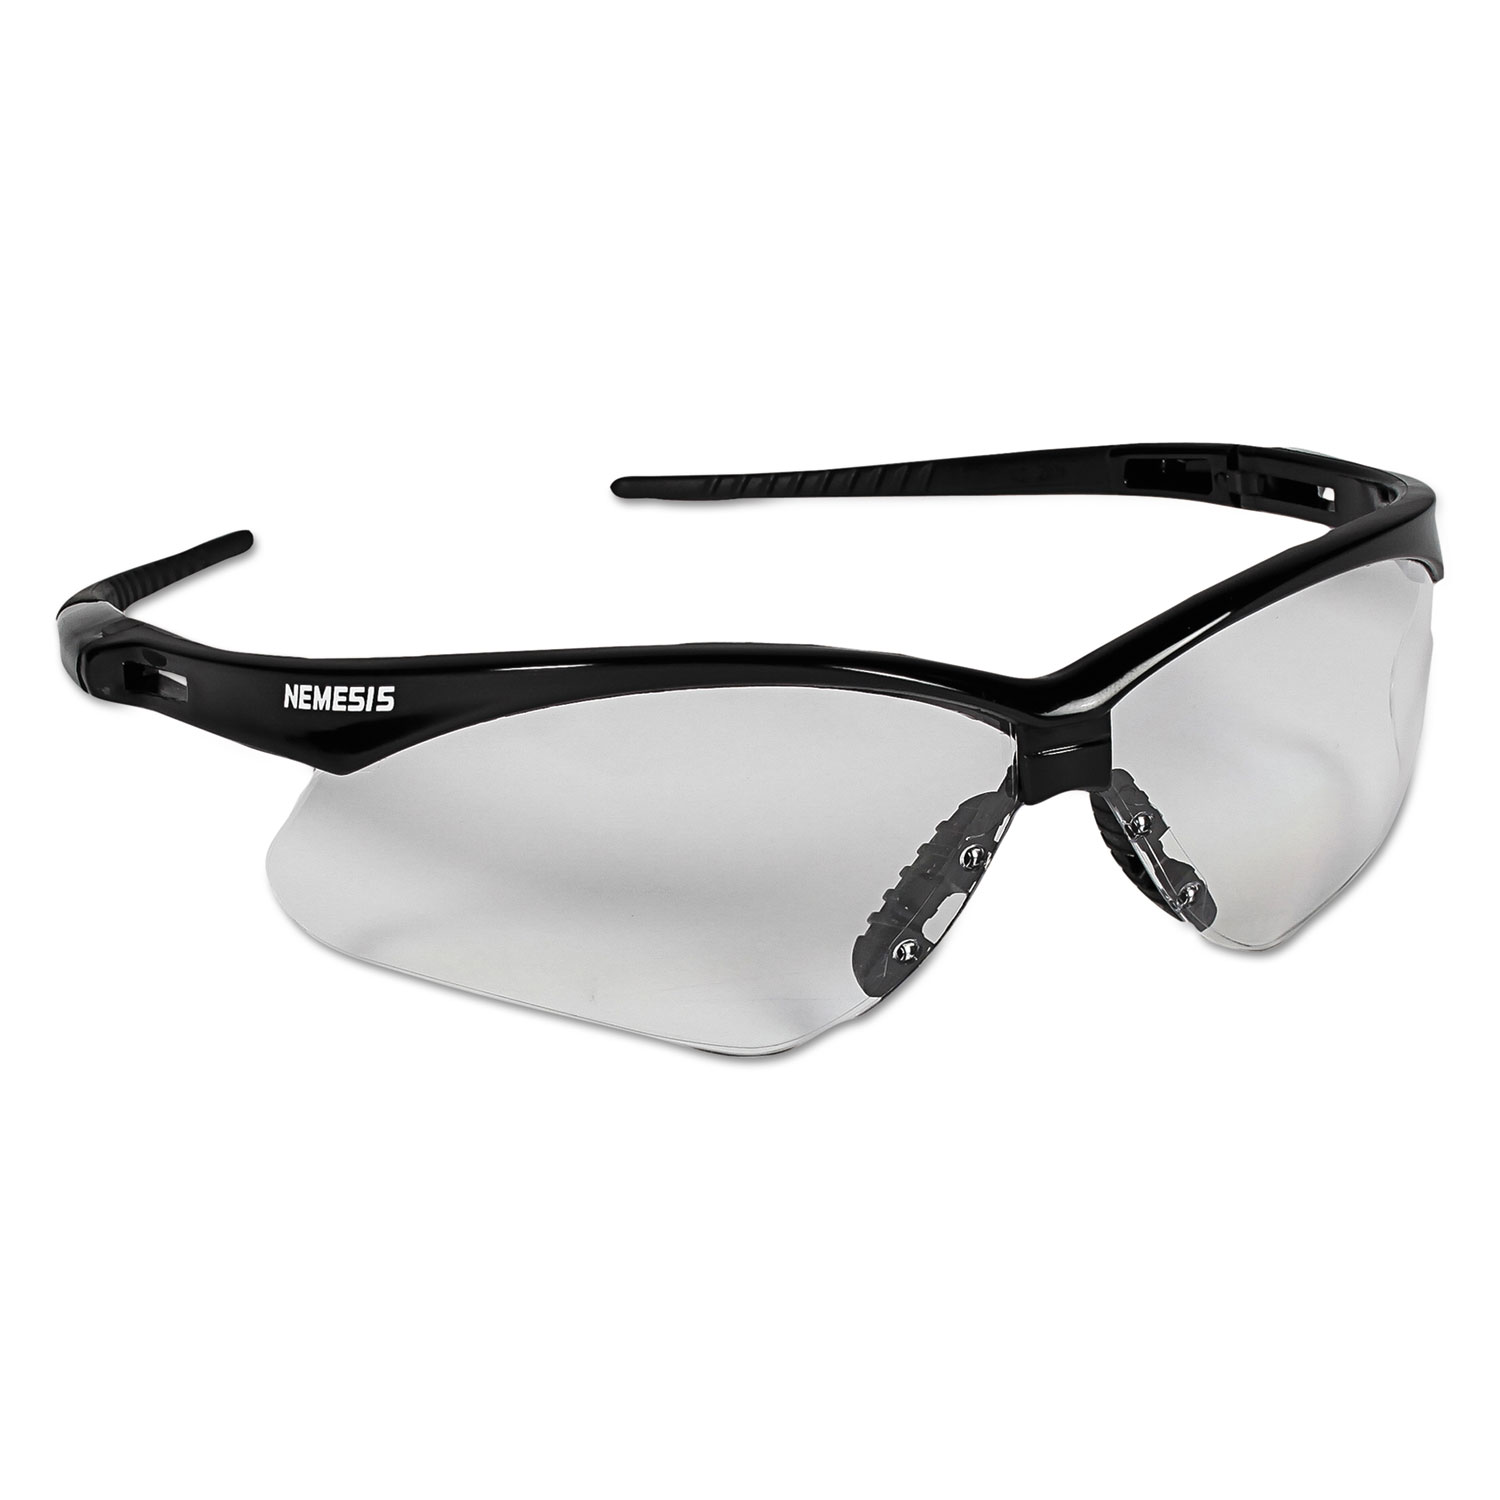  KleenGuard 3000354 Nemesis Safety Glasses, Black Frame, Clear Lens (KCC25676) 